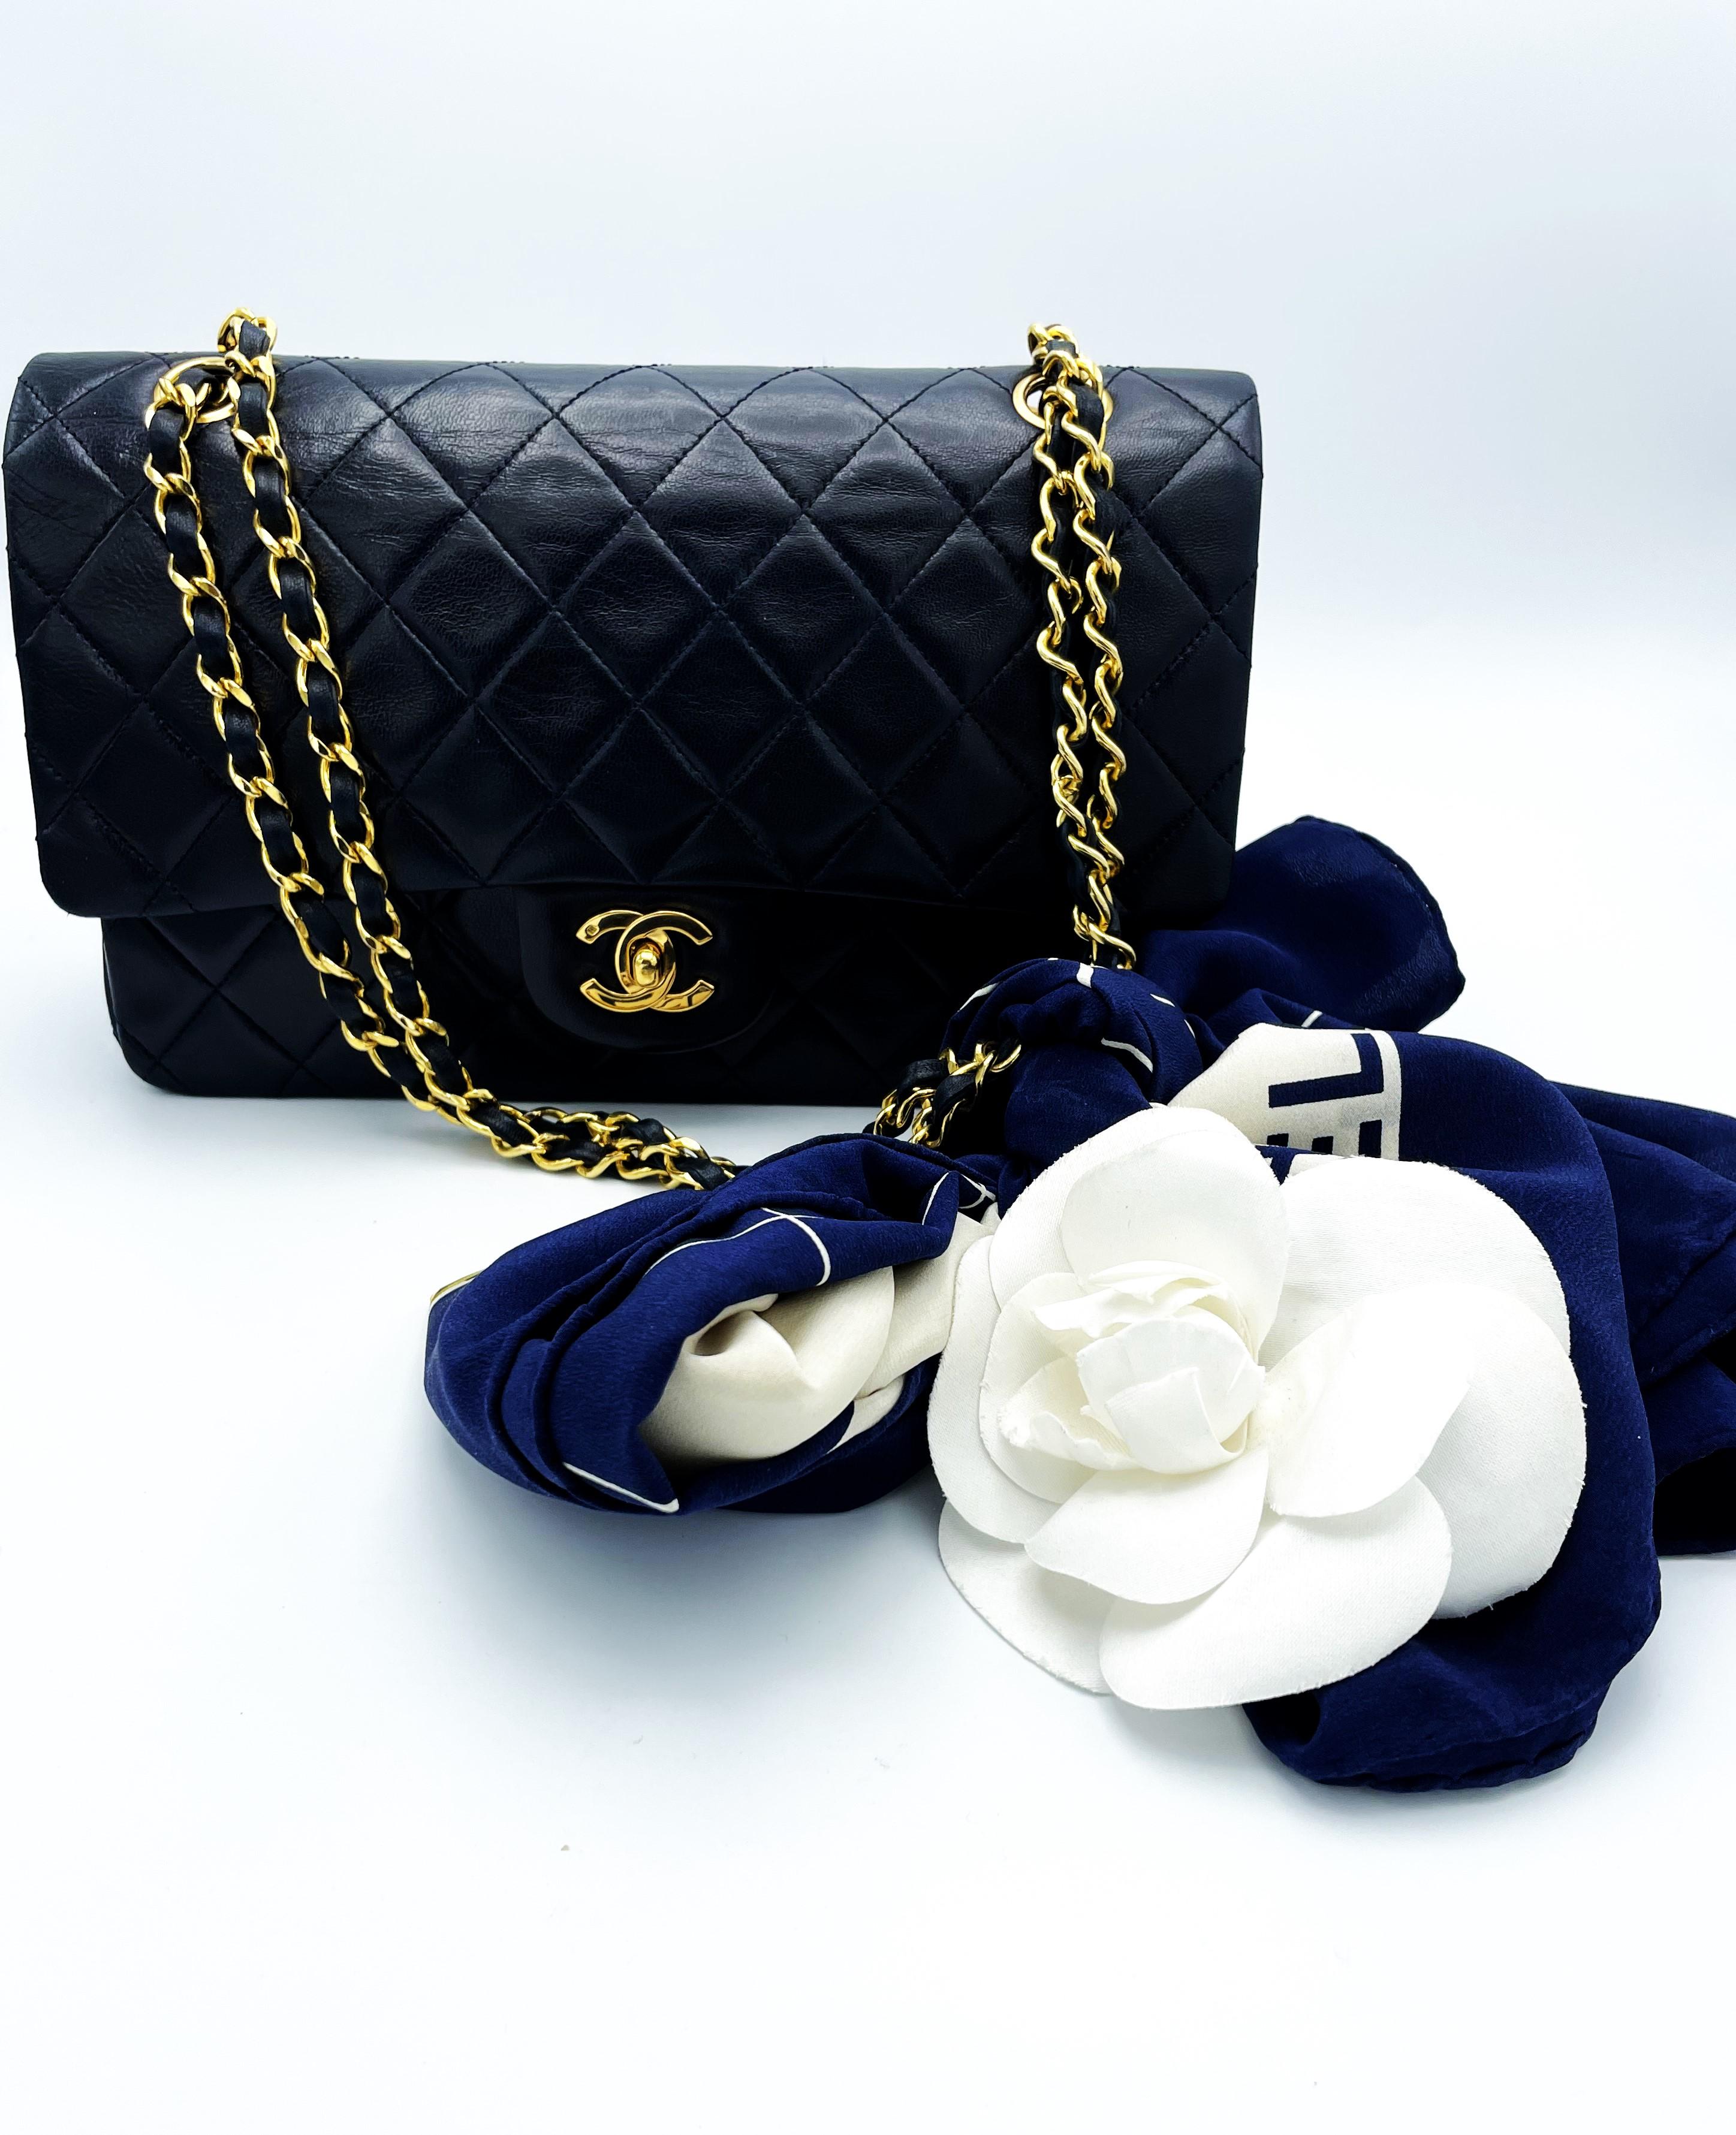 Coco Chanel entwarf dieses Taschenmodell im Februar 1955. Daraus ergab sich die Modellbezeichnung für diese Tasche, die 